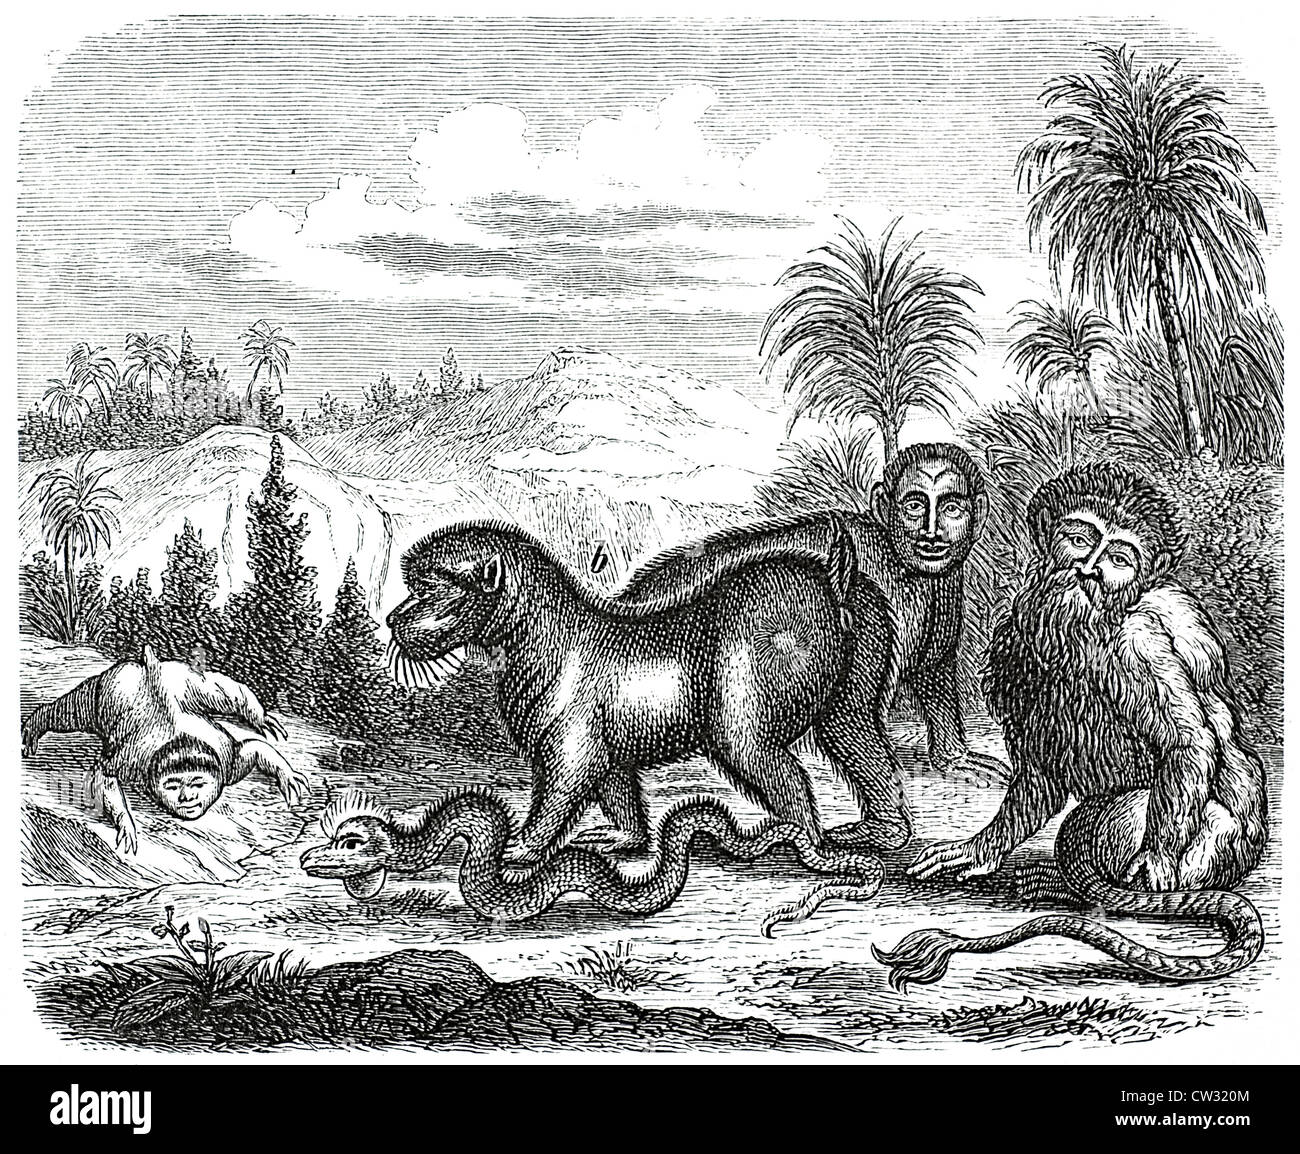 The Kajon, Baboon, sloth, and the Iguana Snake Stock Photo